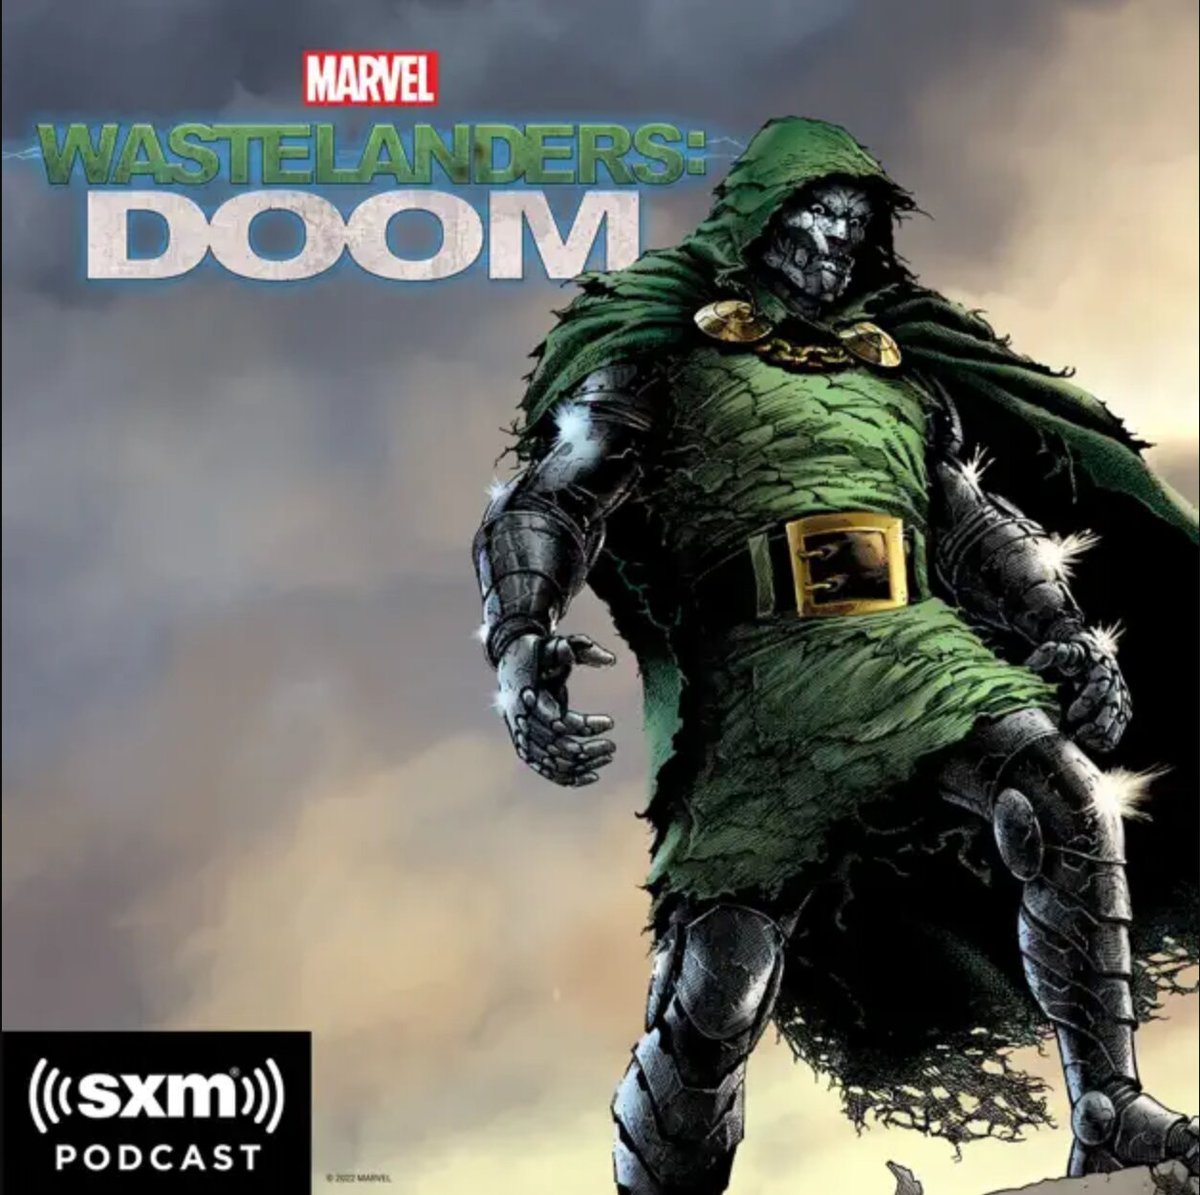 Wastelanders: Doom art. Doctor Doom in green, ragged clothing and worn old metal.